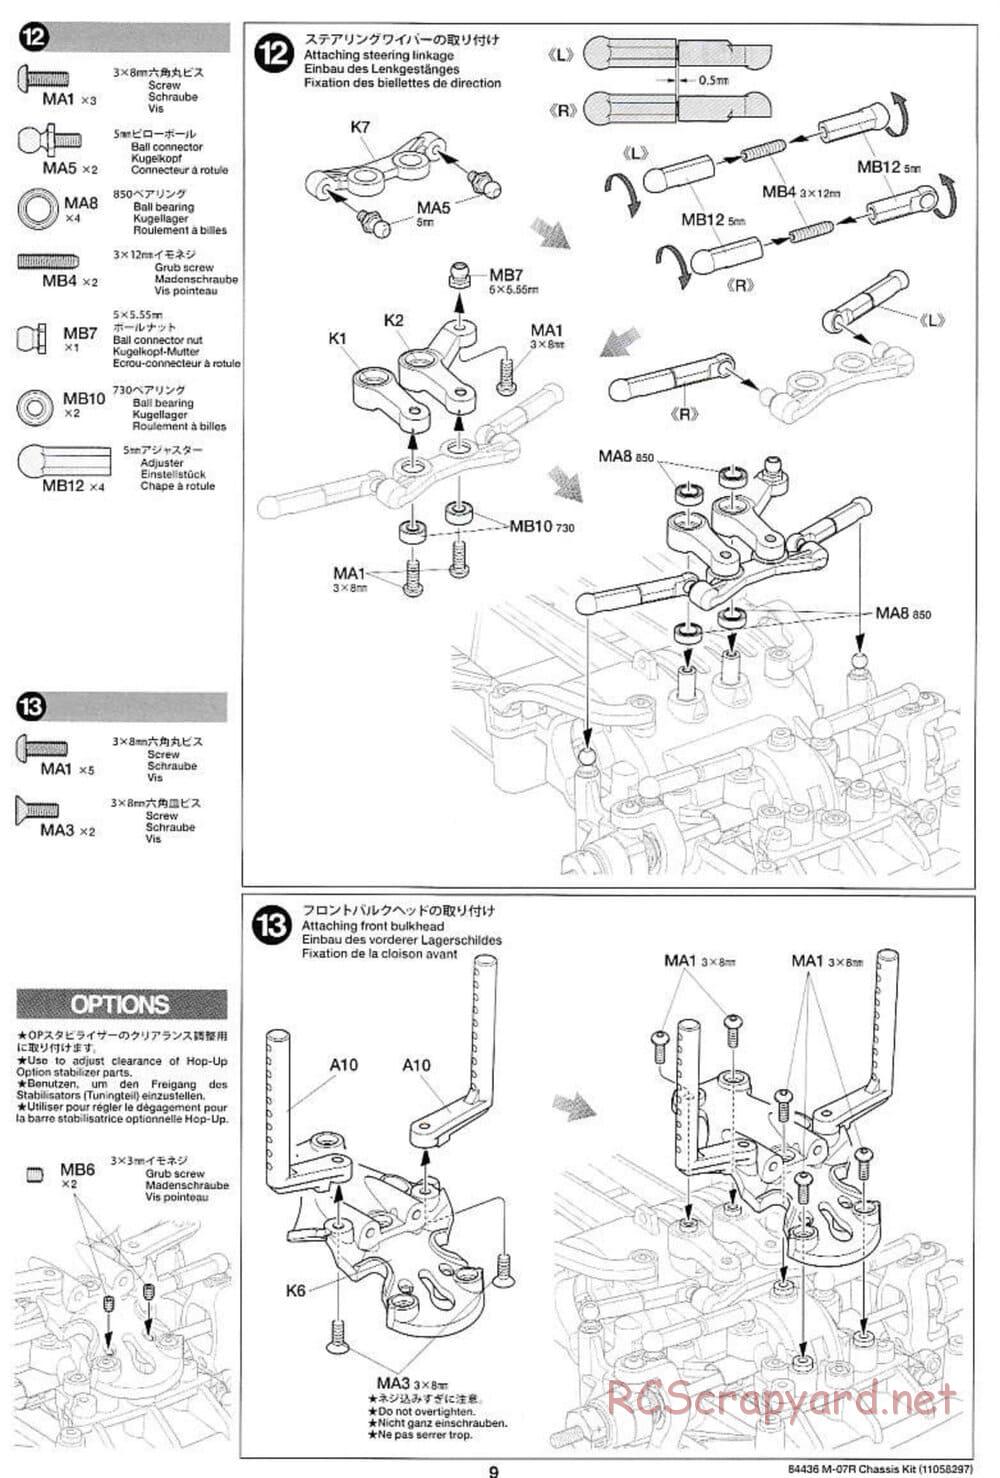 Tamiya - M-07R Chassis - Manual - Page 9